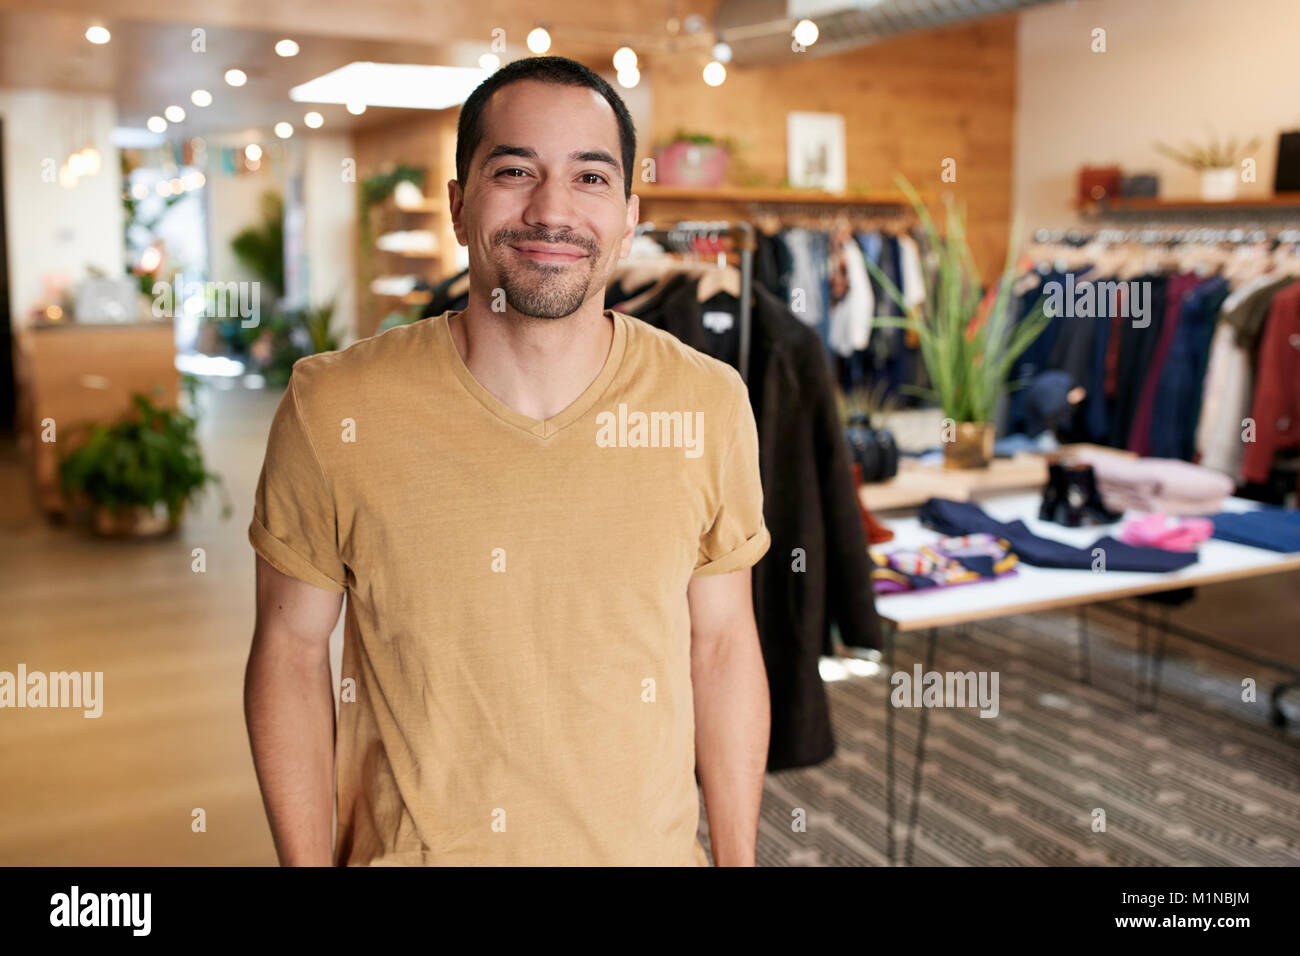 Smiling young Hispanic man standing dans un magasin de vêtements Banque D'Images